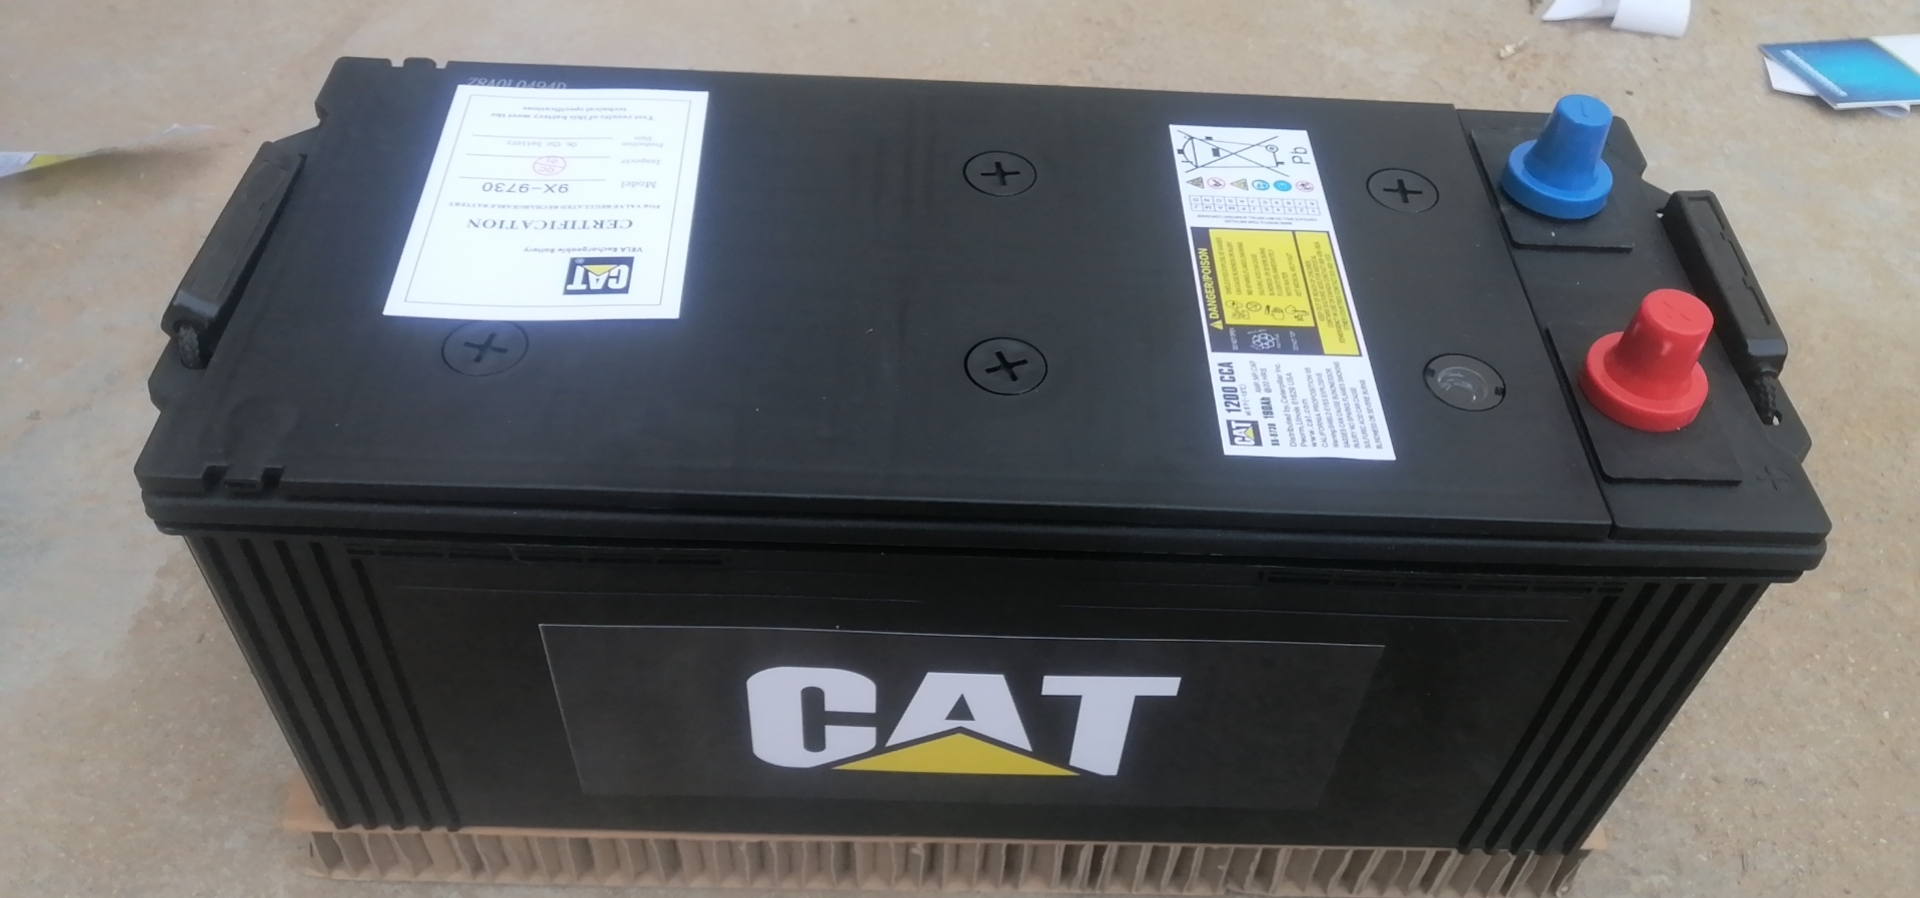 德国卡特CAT蓄电池115-2421/12V90AH压实机/发动机-发电机组/推土机用